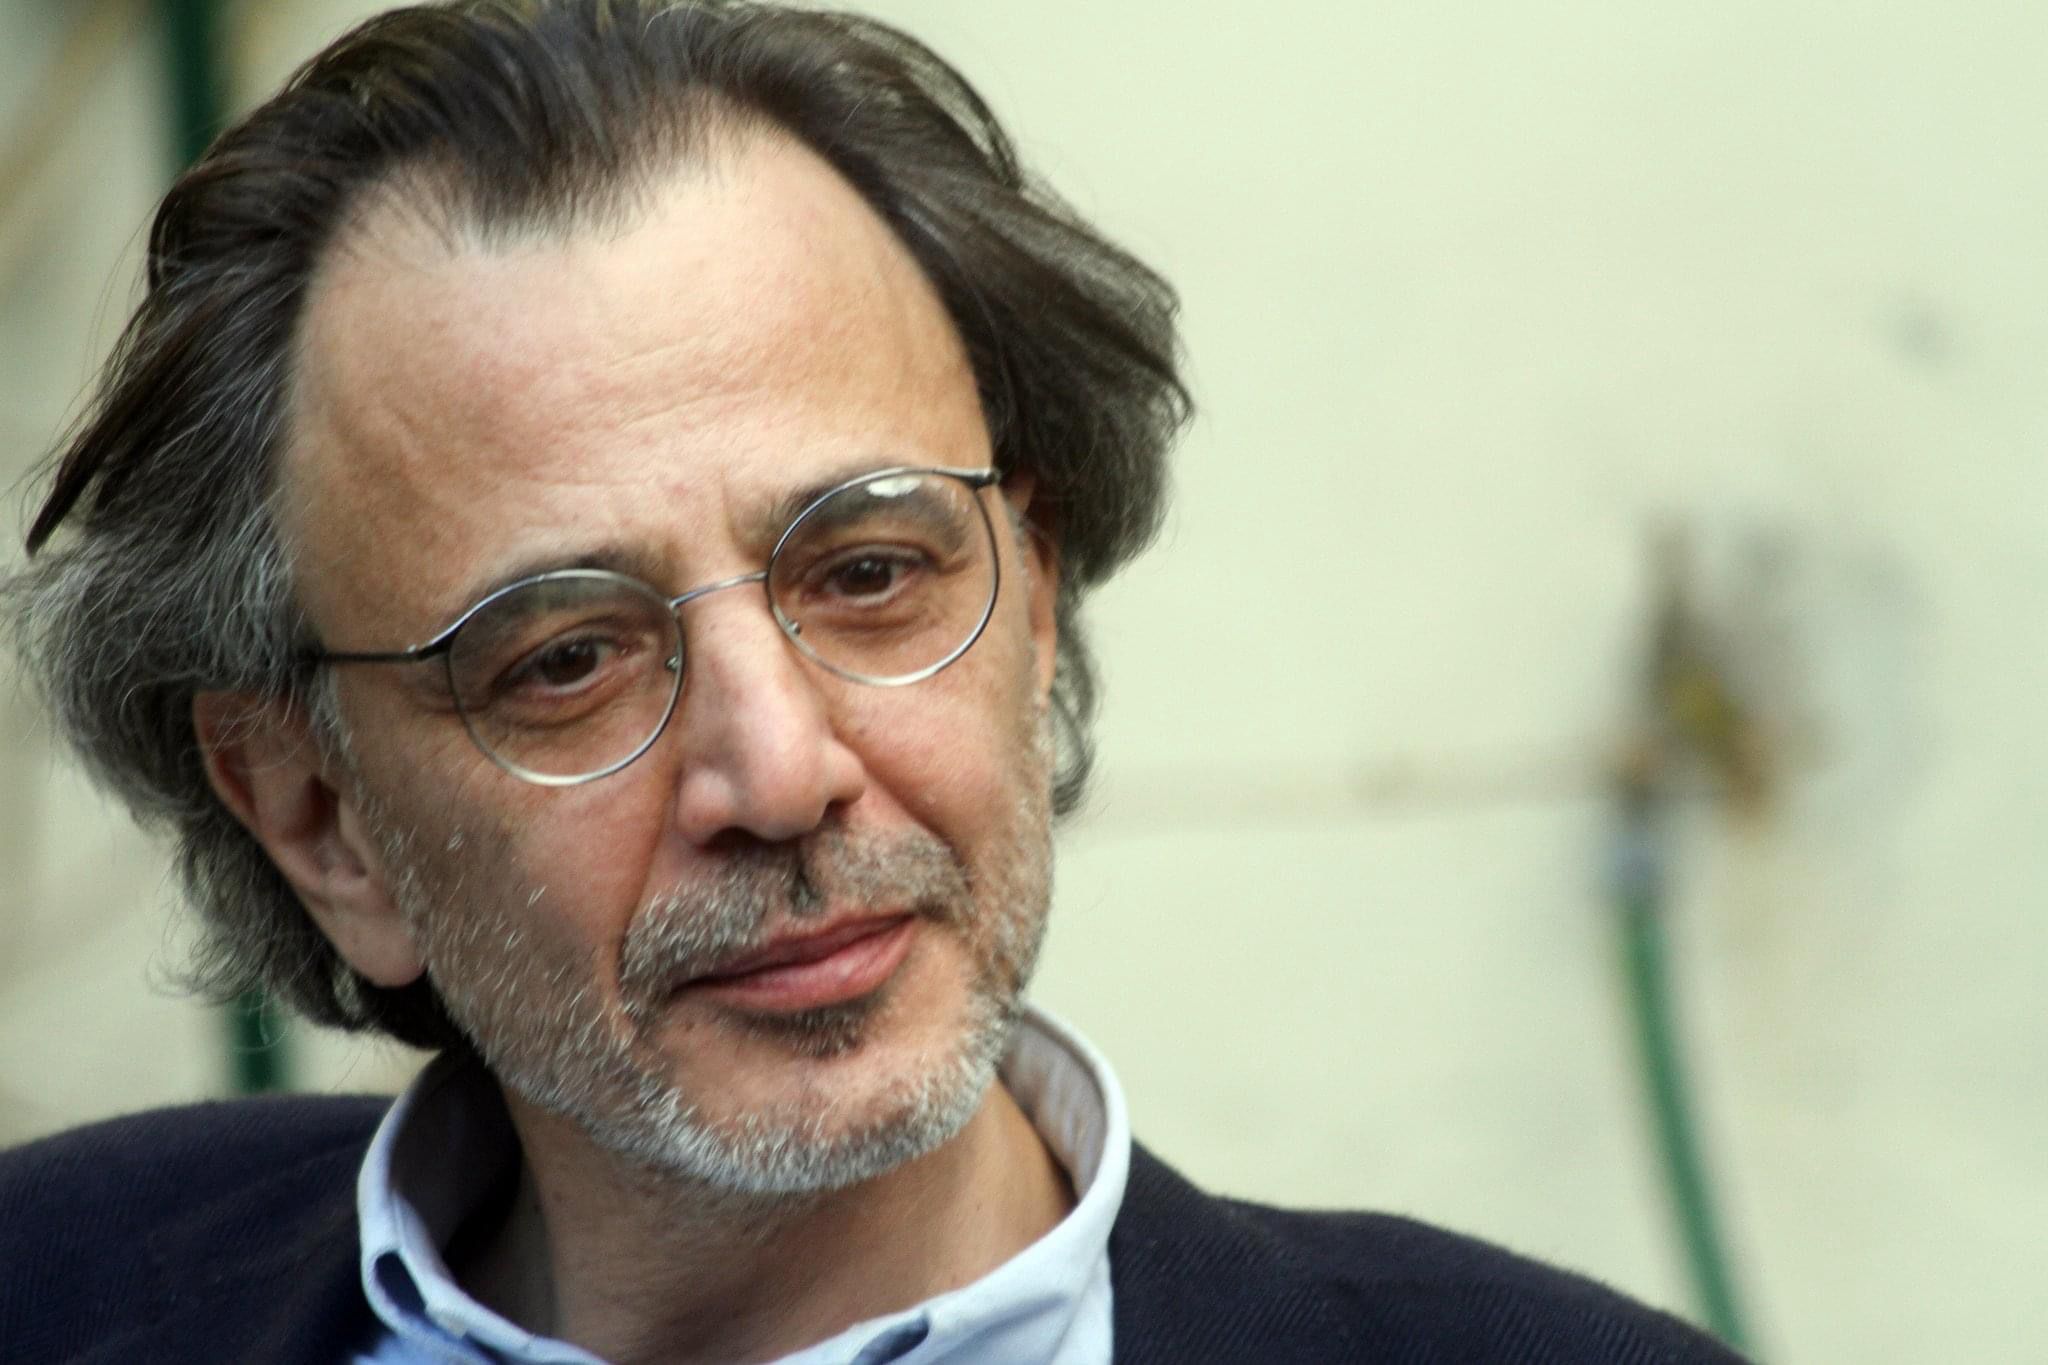 Scomparsa di Daniele Pugliese, Giani: “Ha fatto crescere l’informazione istituzionale”